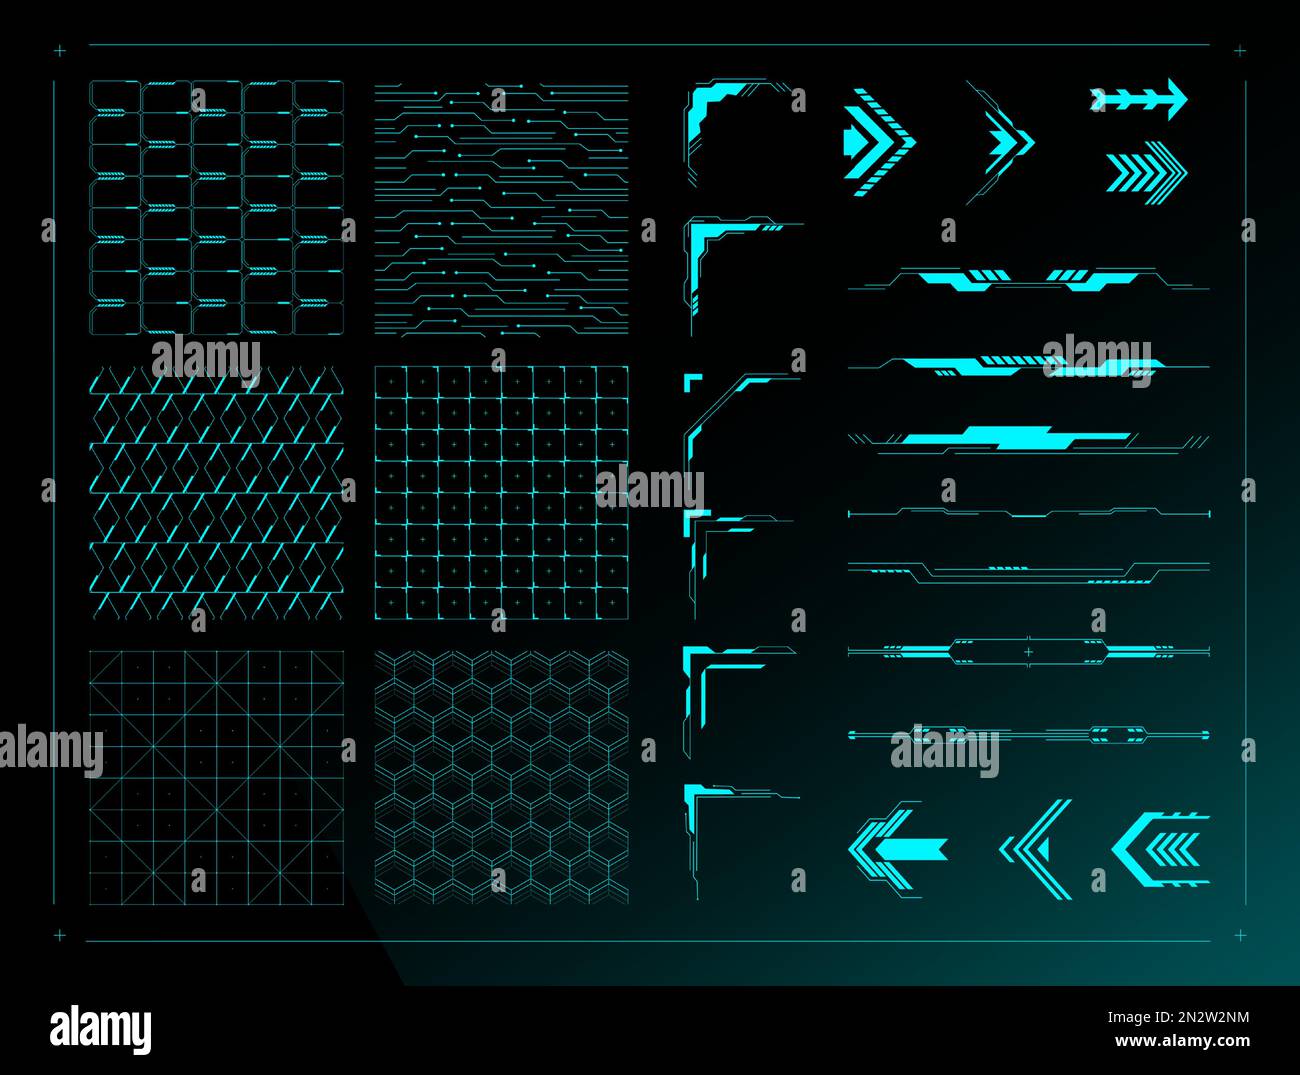 Elementi di design dell'interfaccia utente sci fi. Texture di sfondo griglia cyberpunk, bordi divisori futuristici, angoli astratti HUD e set di frecce vettoriali Illustrazione Vettoriale